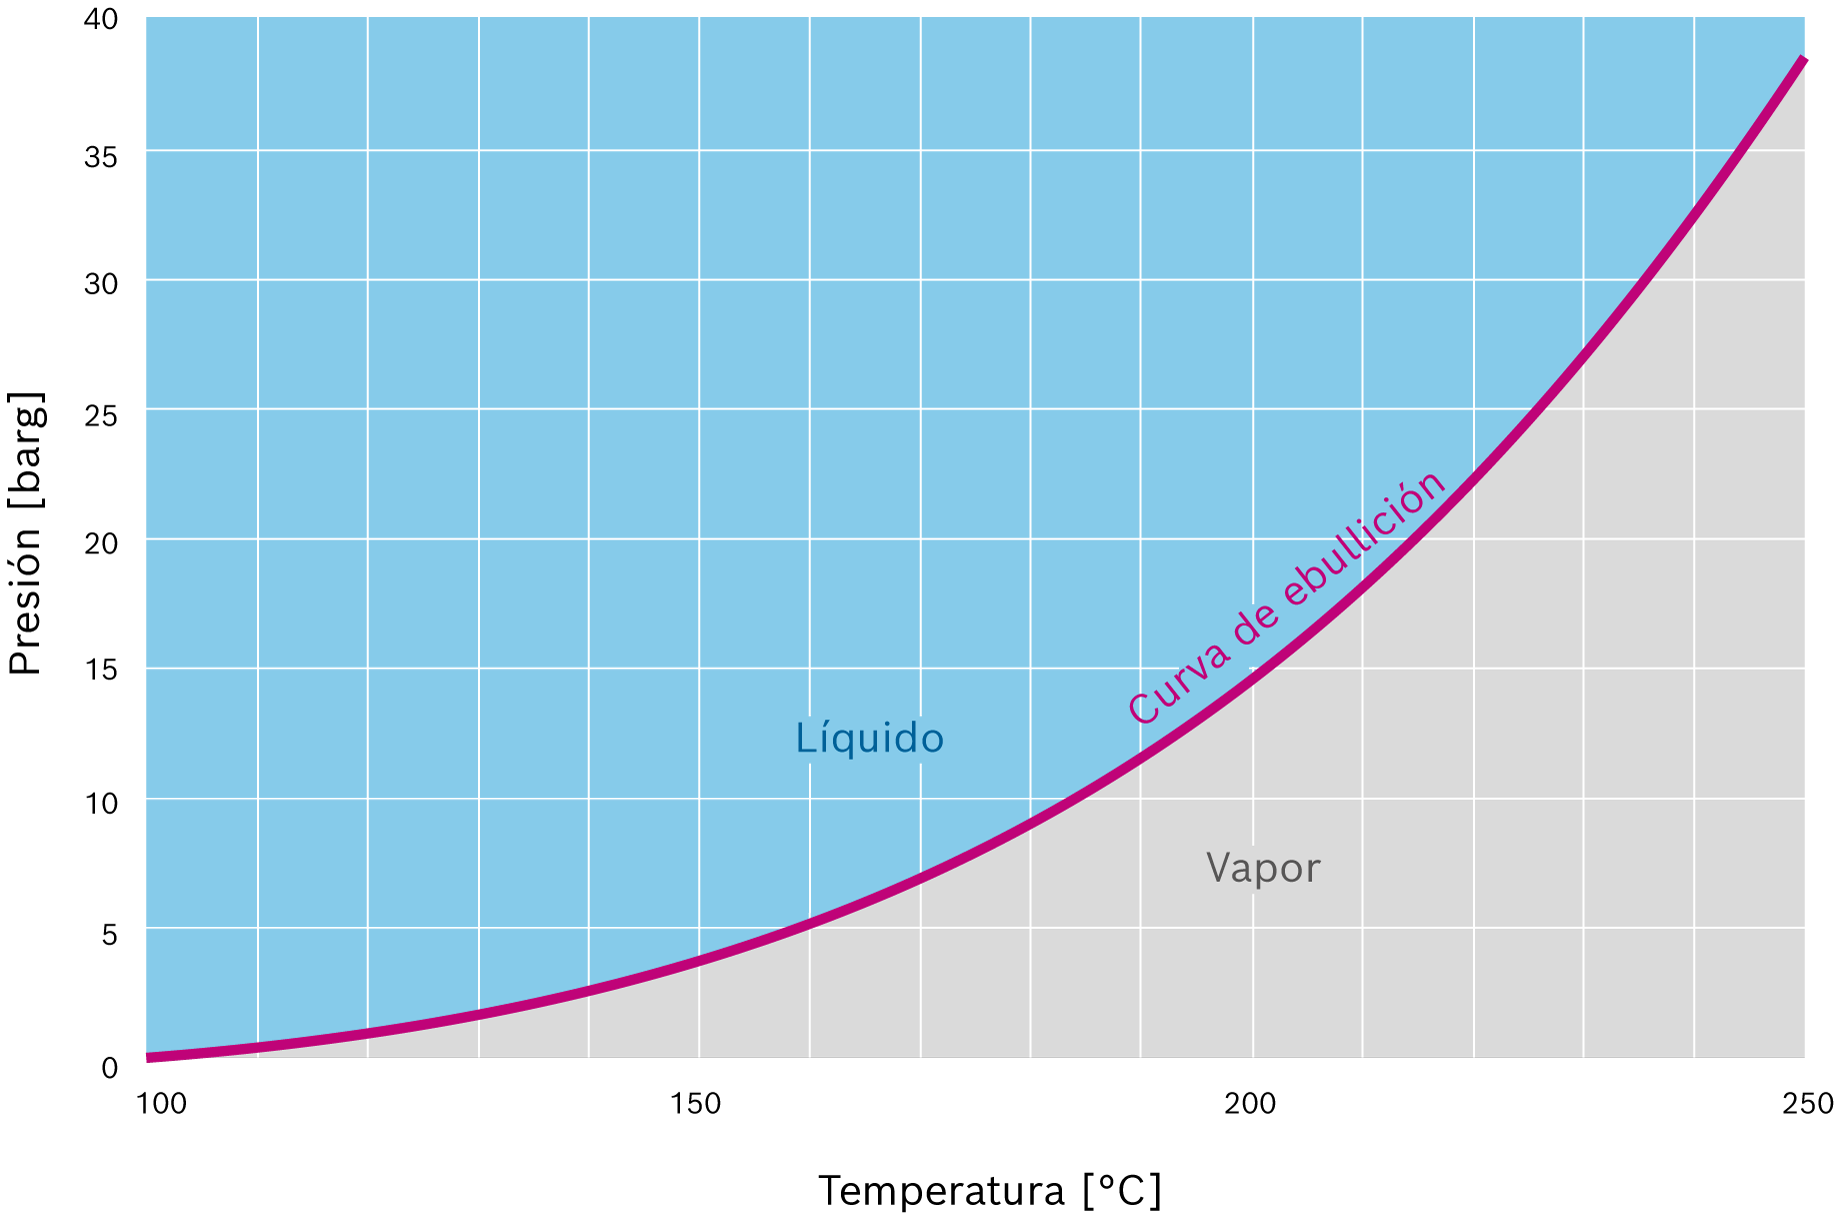 Curva de ebullición del agua pura en el gráfico presión-temperatura (intervalo < 40 bar)